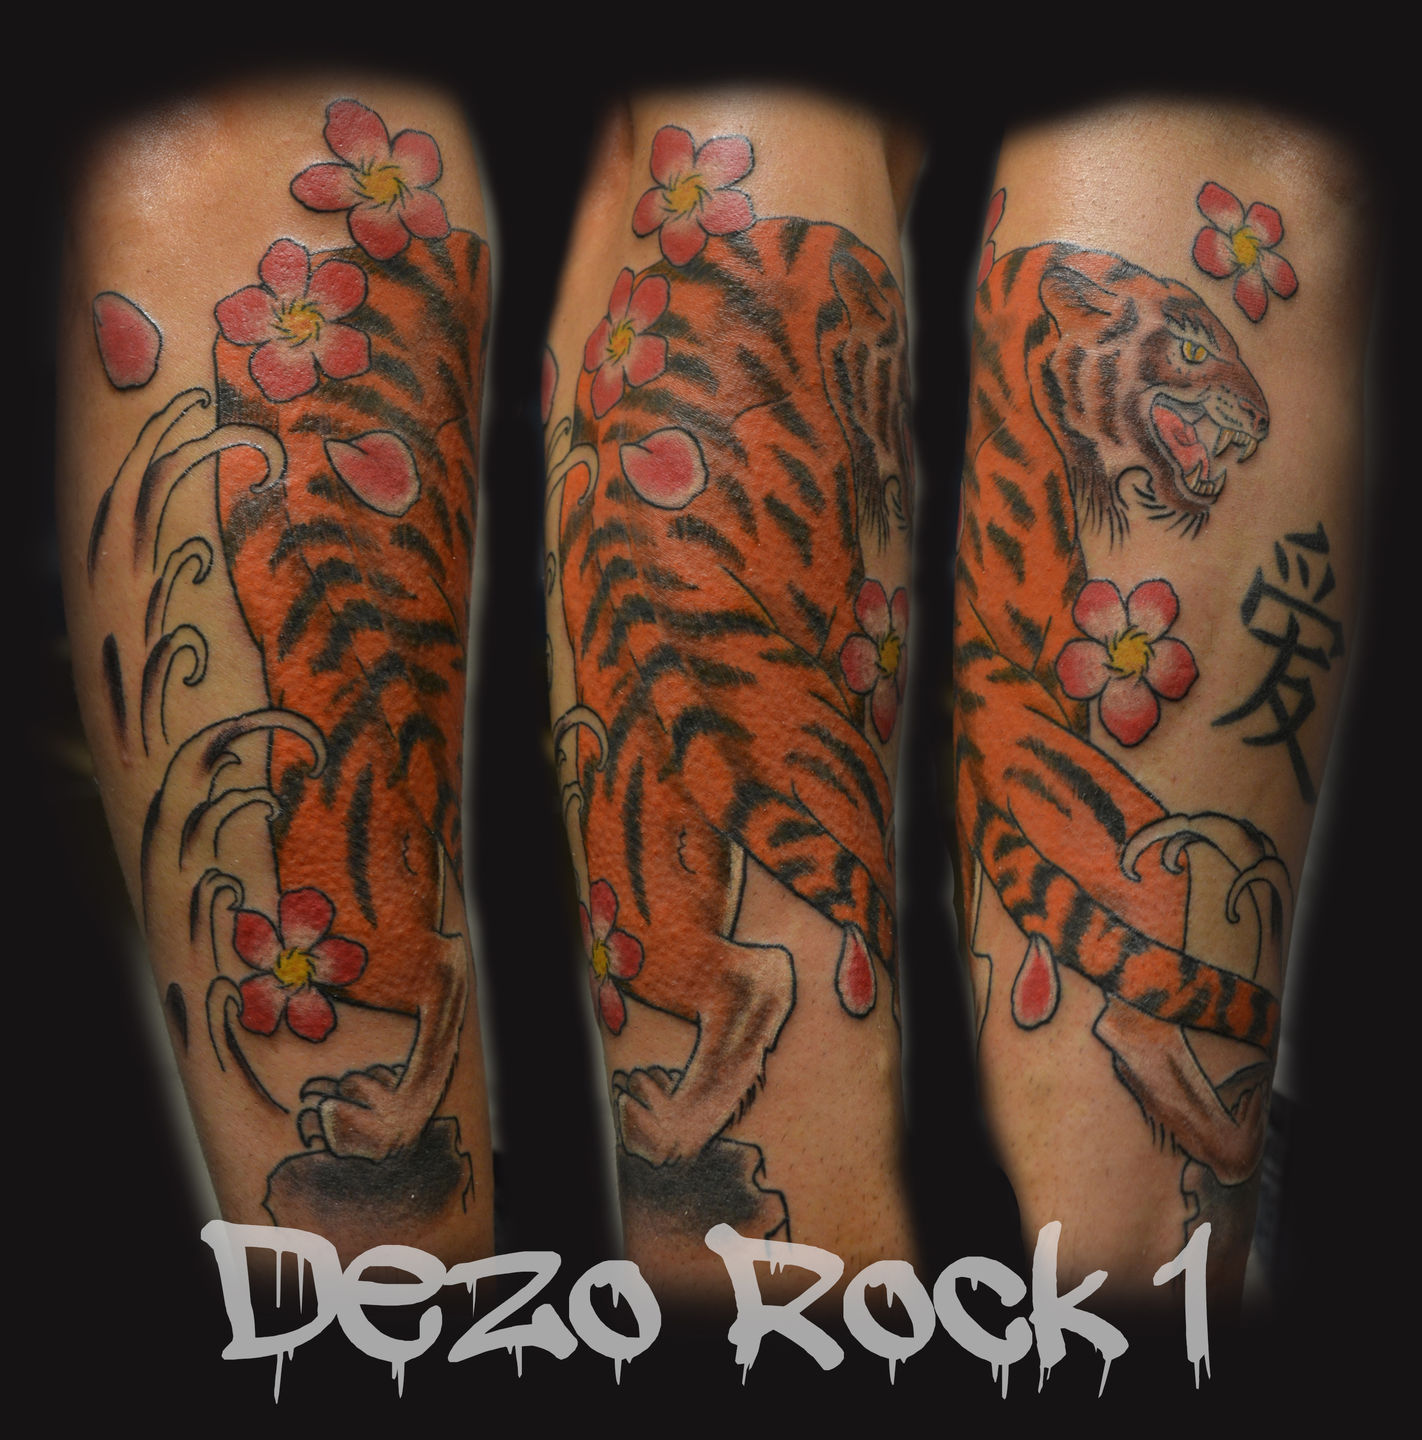 Tiger_tattoo